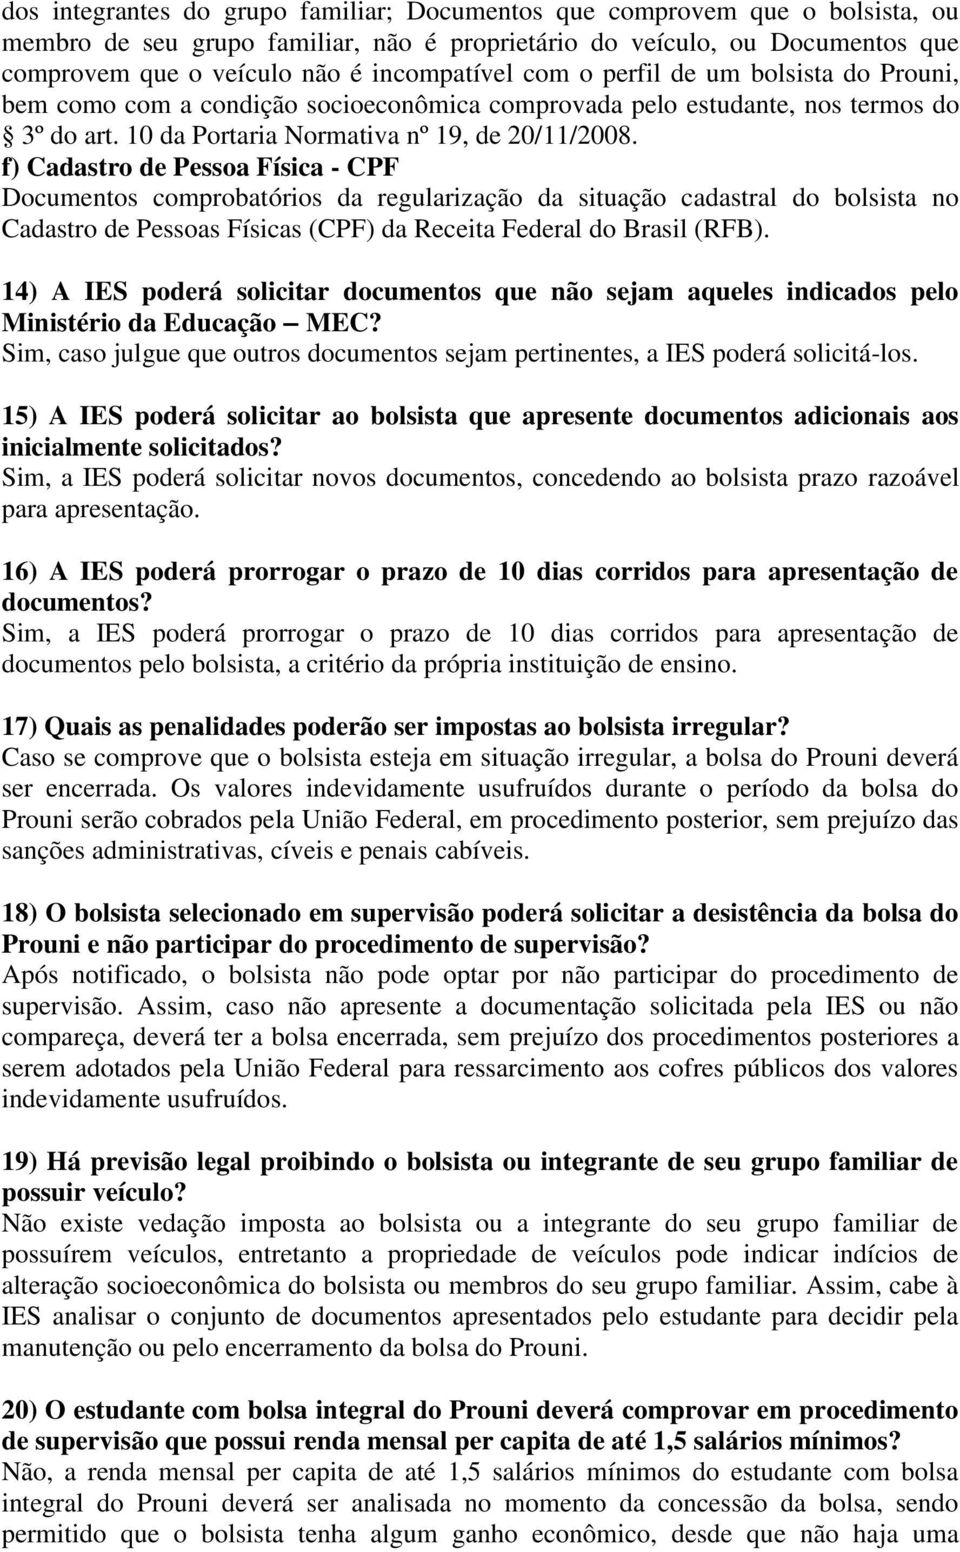 f) Cadastro de Pessoa Física - CPF Documentos comprobatórios da regularização da situação cadastral do bolsista no Cadastro de Pessoas Físicas (CPF) da Receita Federal do Brasil (RFB).